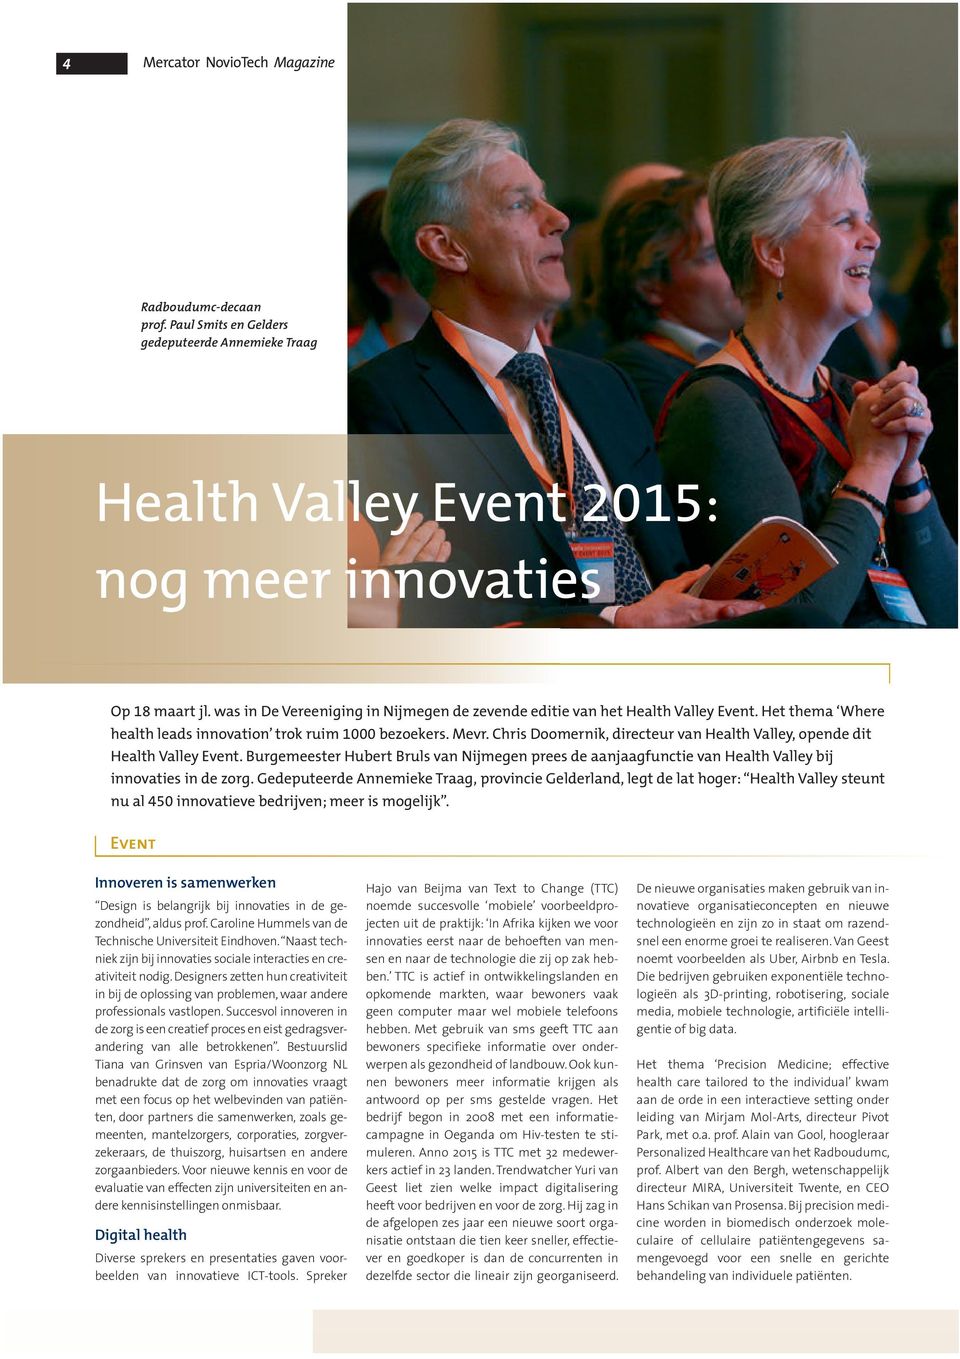 Chris Doomernik, directeur van Health Valley, opende dit Health Valley Event. Burgemeester Hubert Bruls van Nijmegen prees de aanjaagfunctie van Health Valley bij innovaties in de zorg.